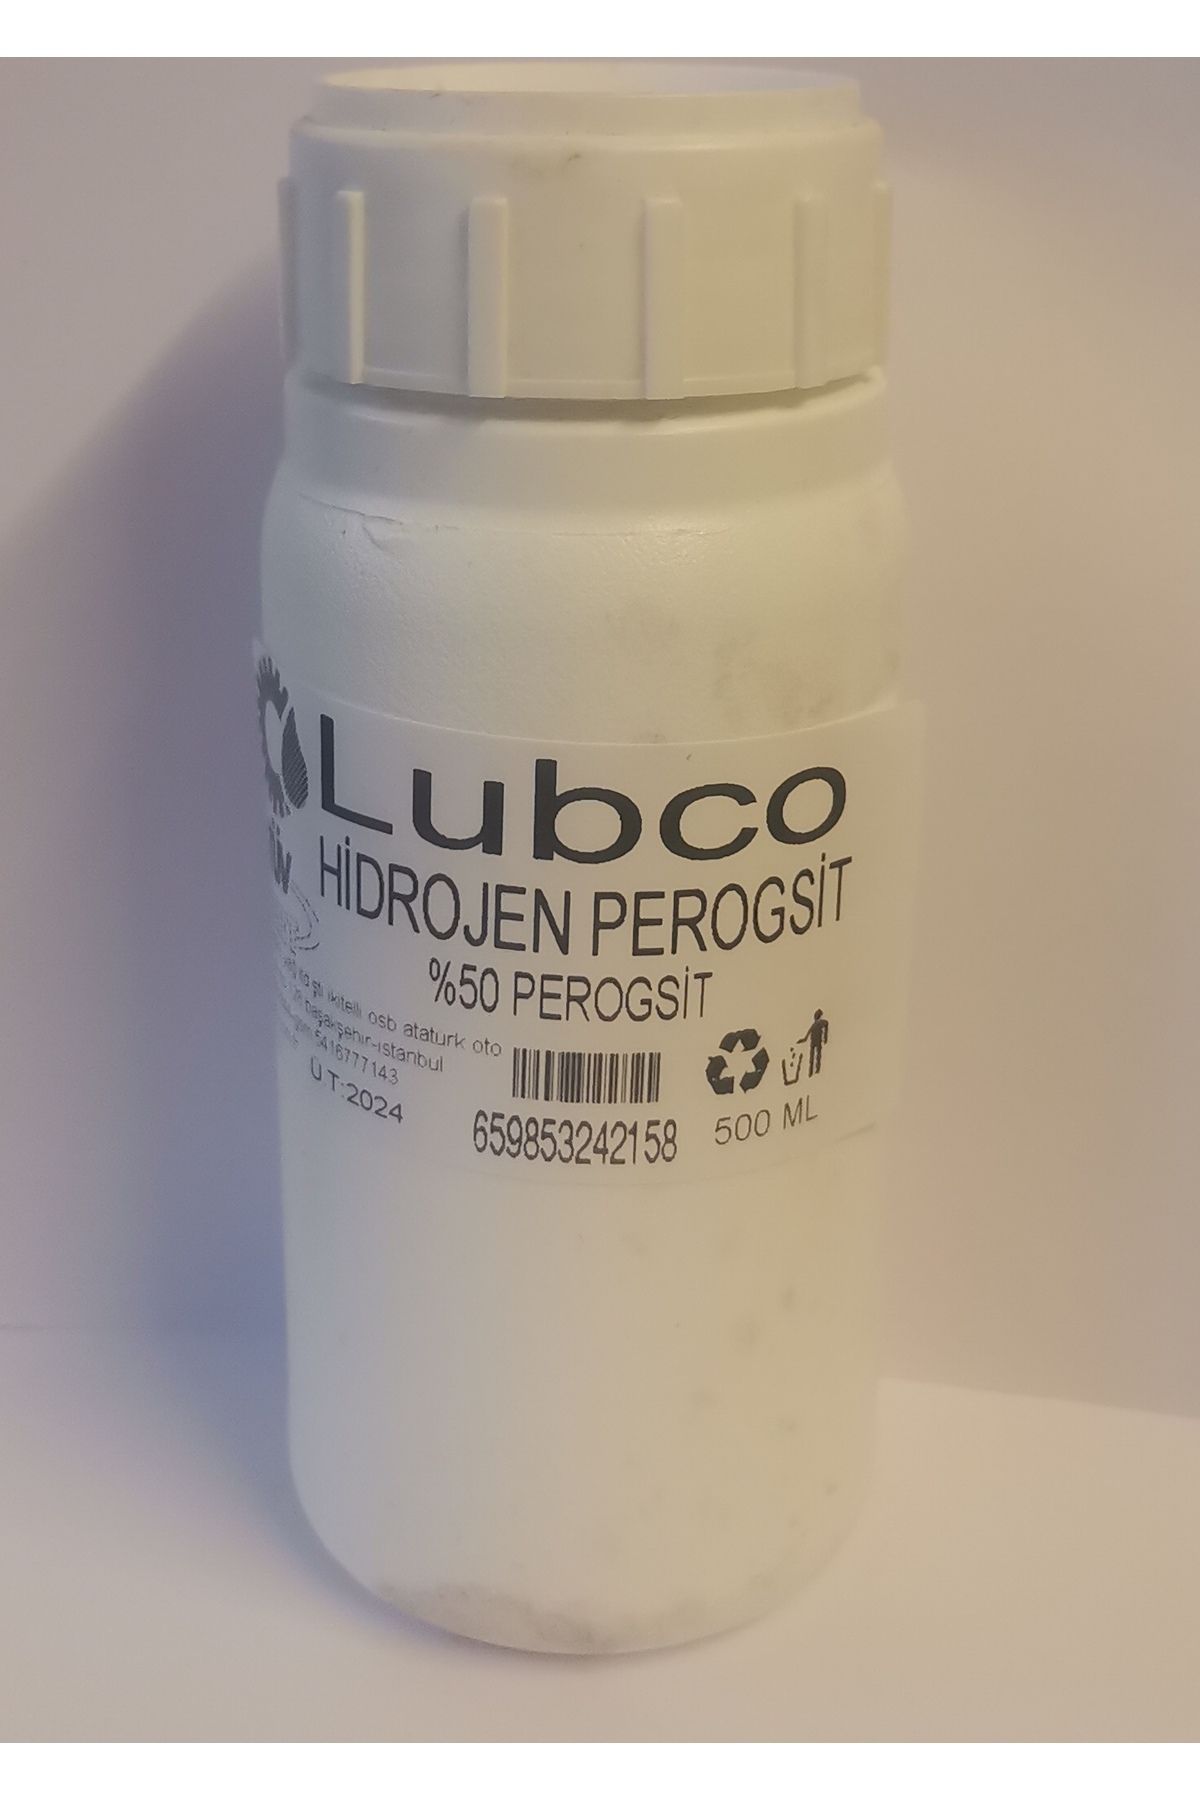 LUBCO Hidrojen Per Oksit %50-oksijenli Su-hydrogen Peroxide 50% 500 grm